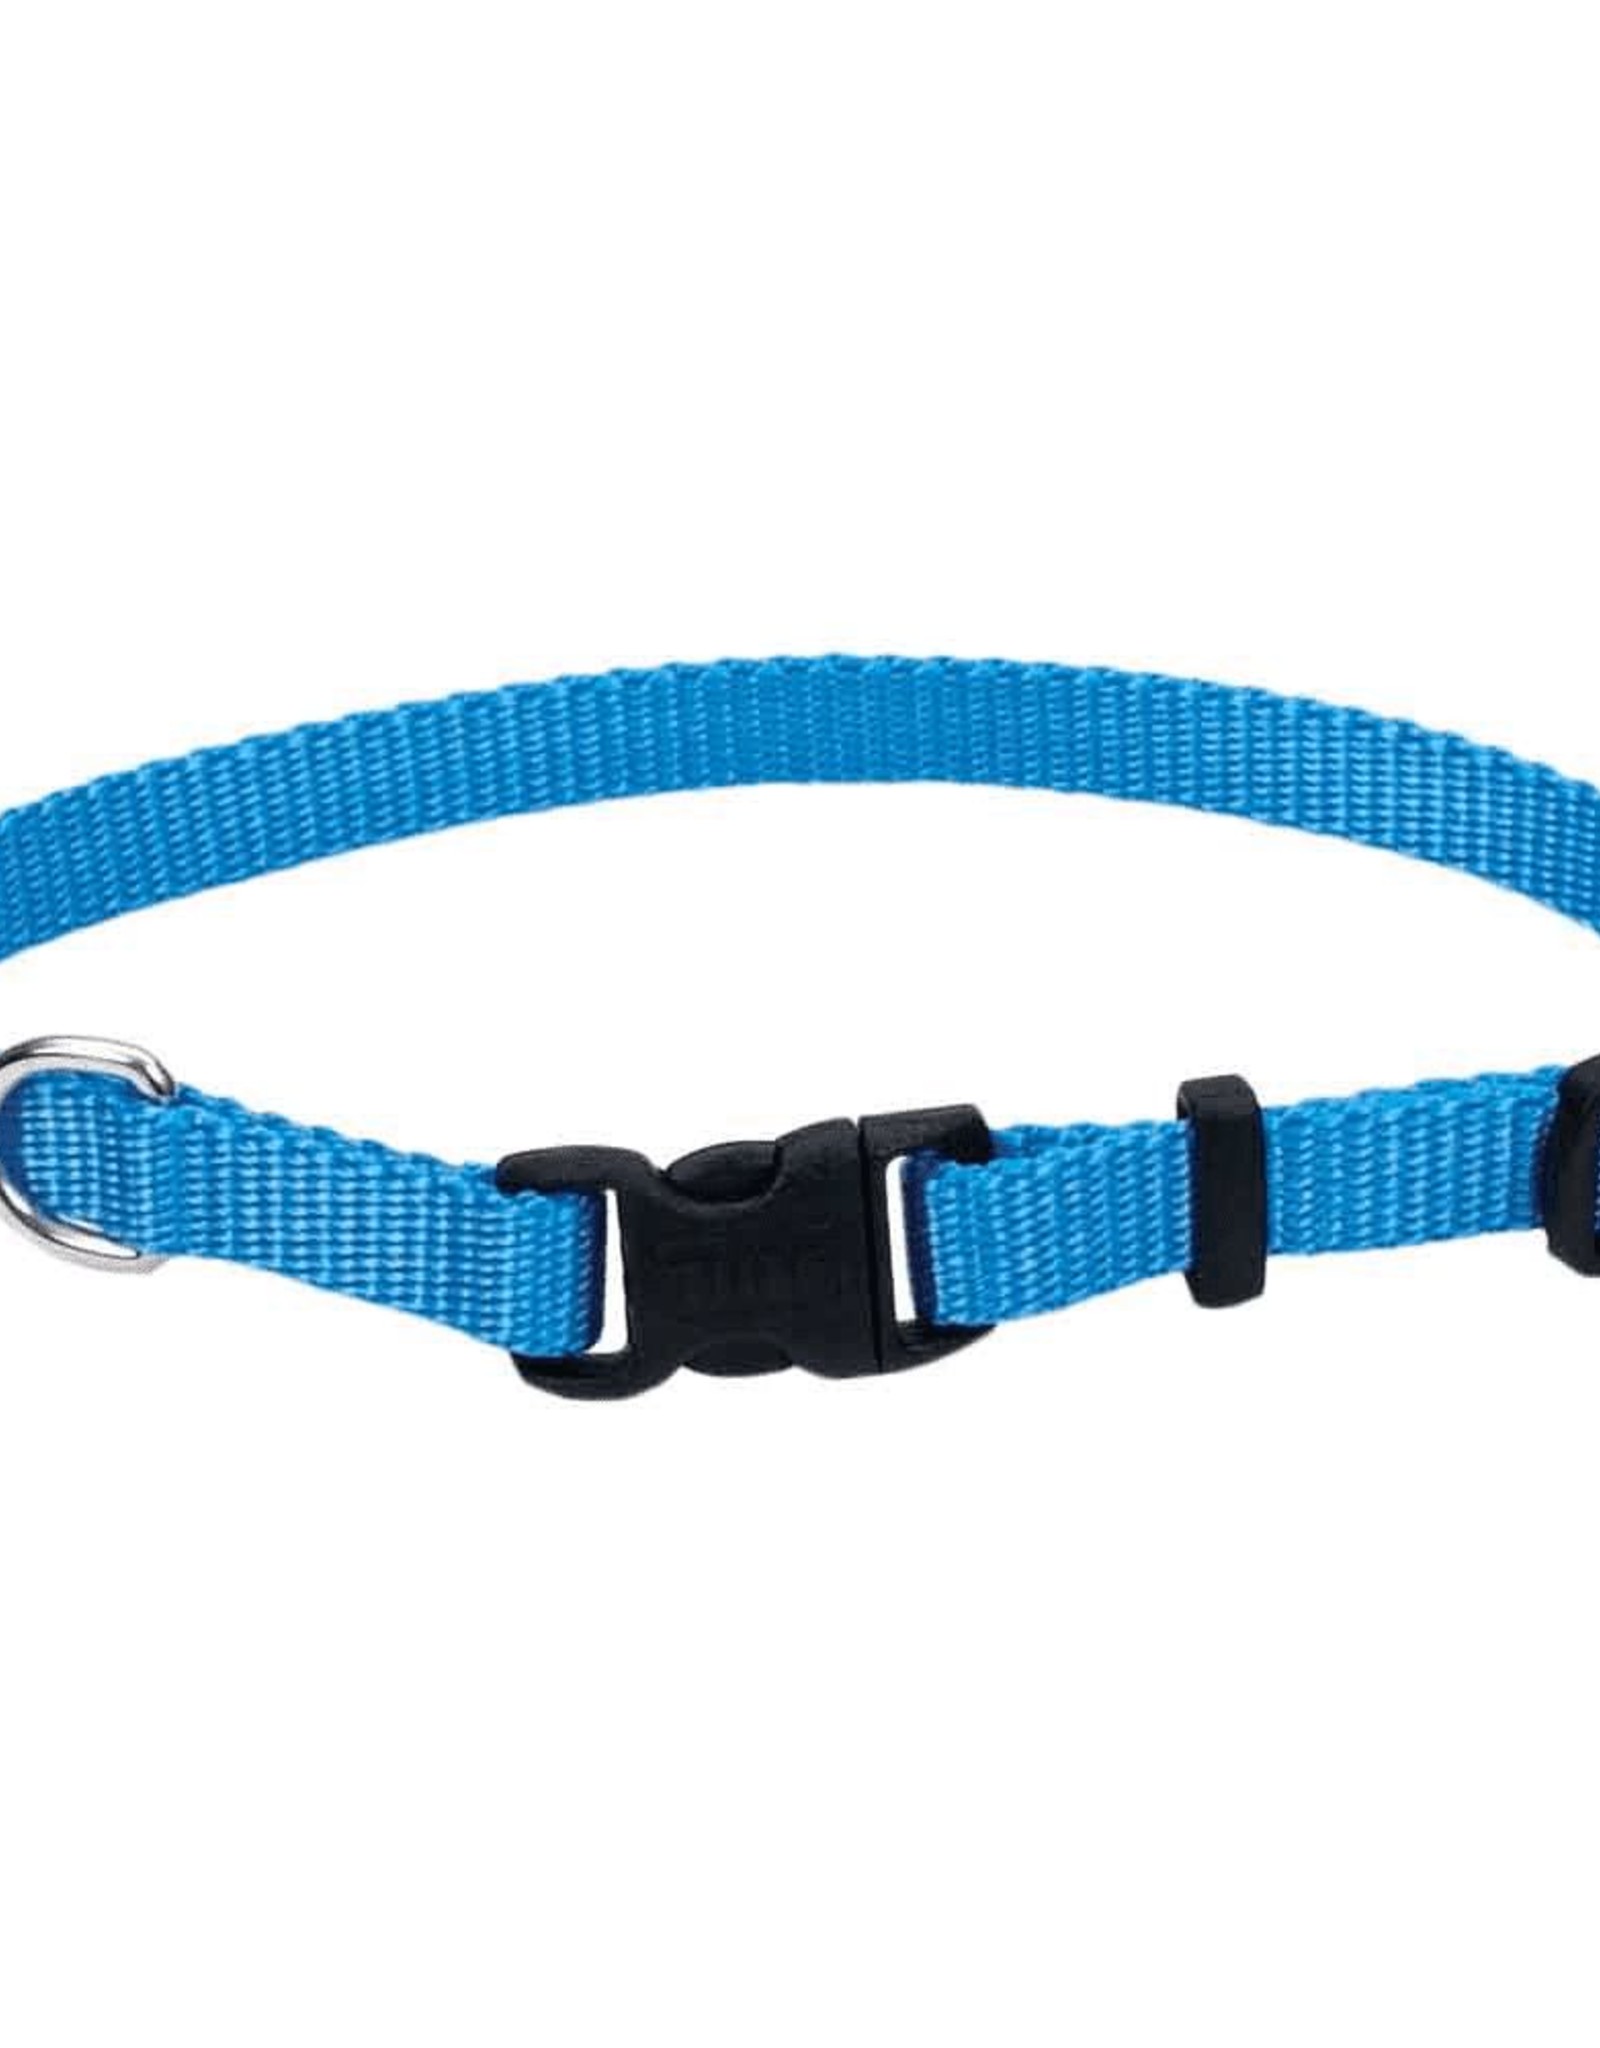 Coastal Pet Products Coastal Pet Products 3/4"x14-20" Blue Lagoon Nylon Dog Collar